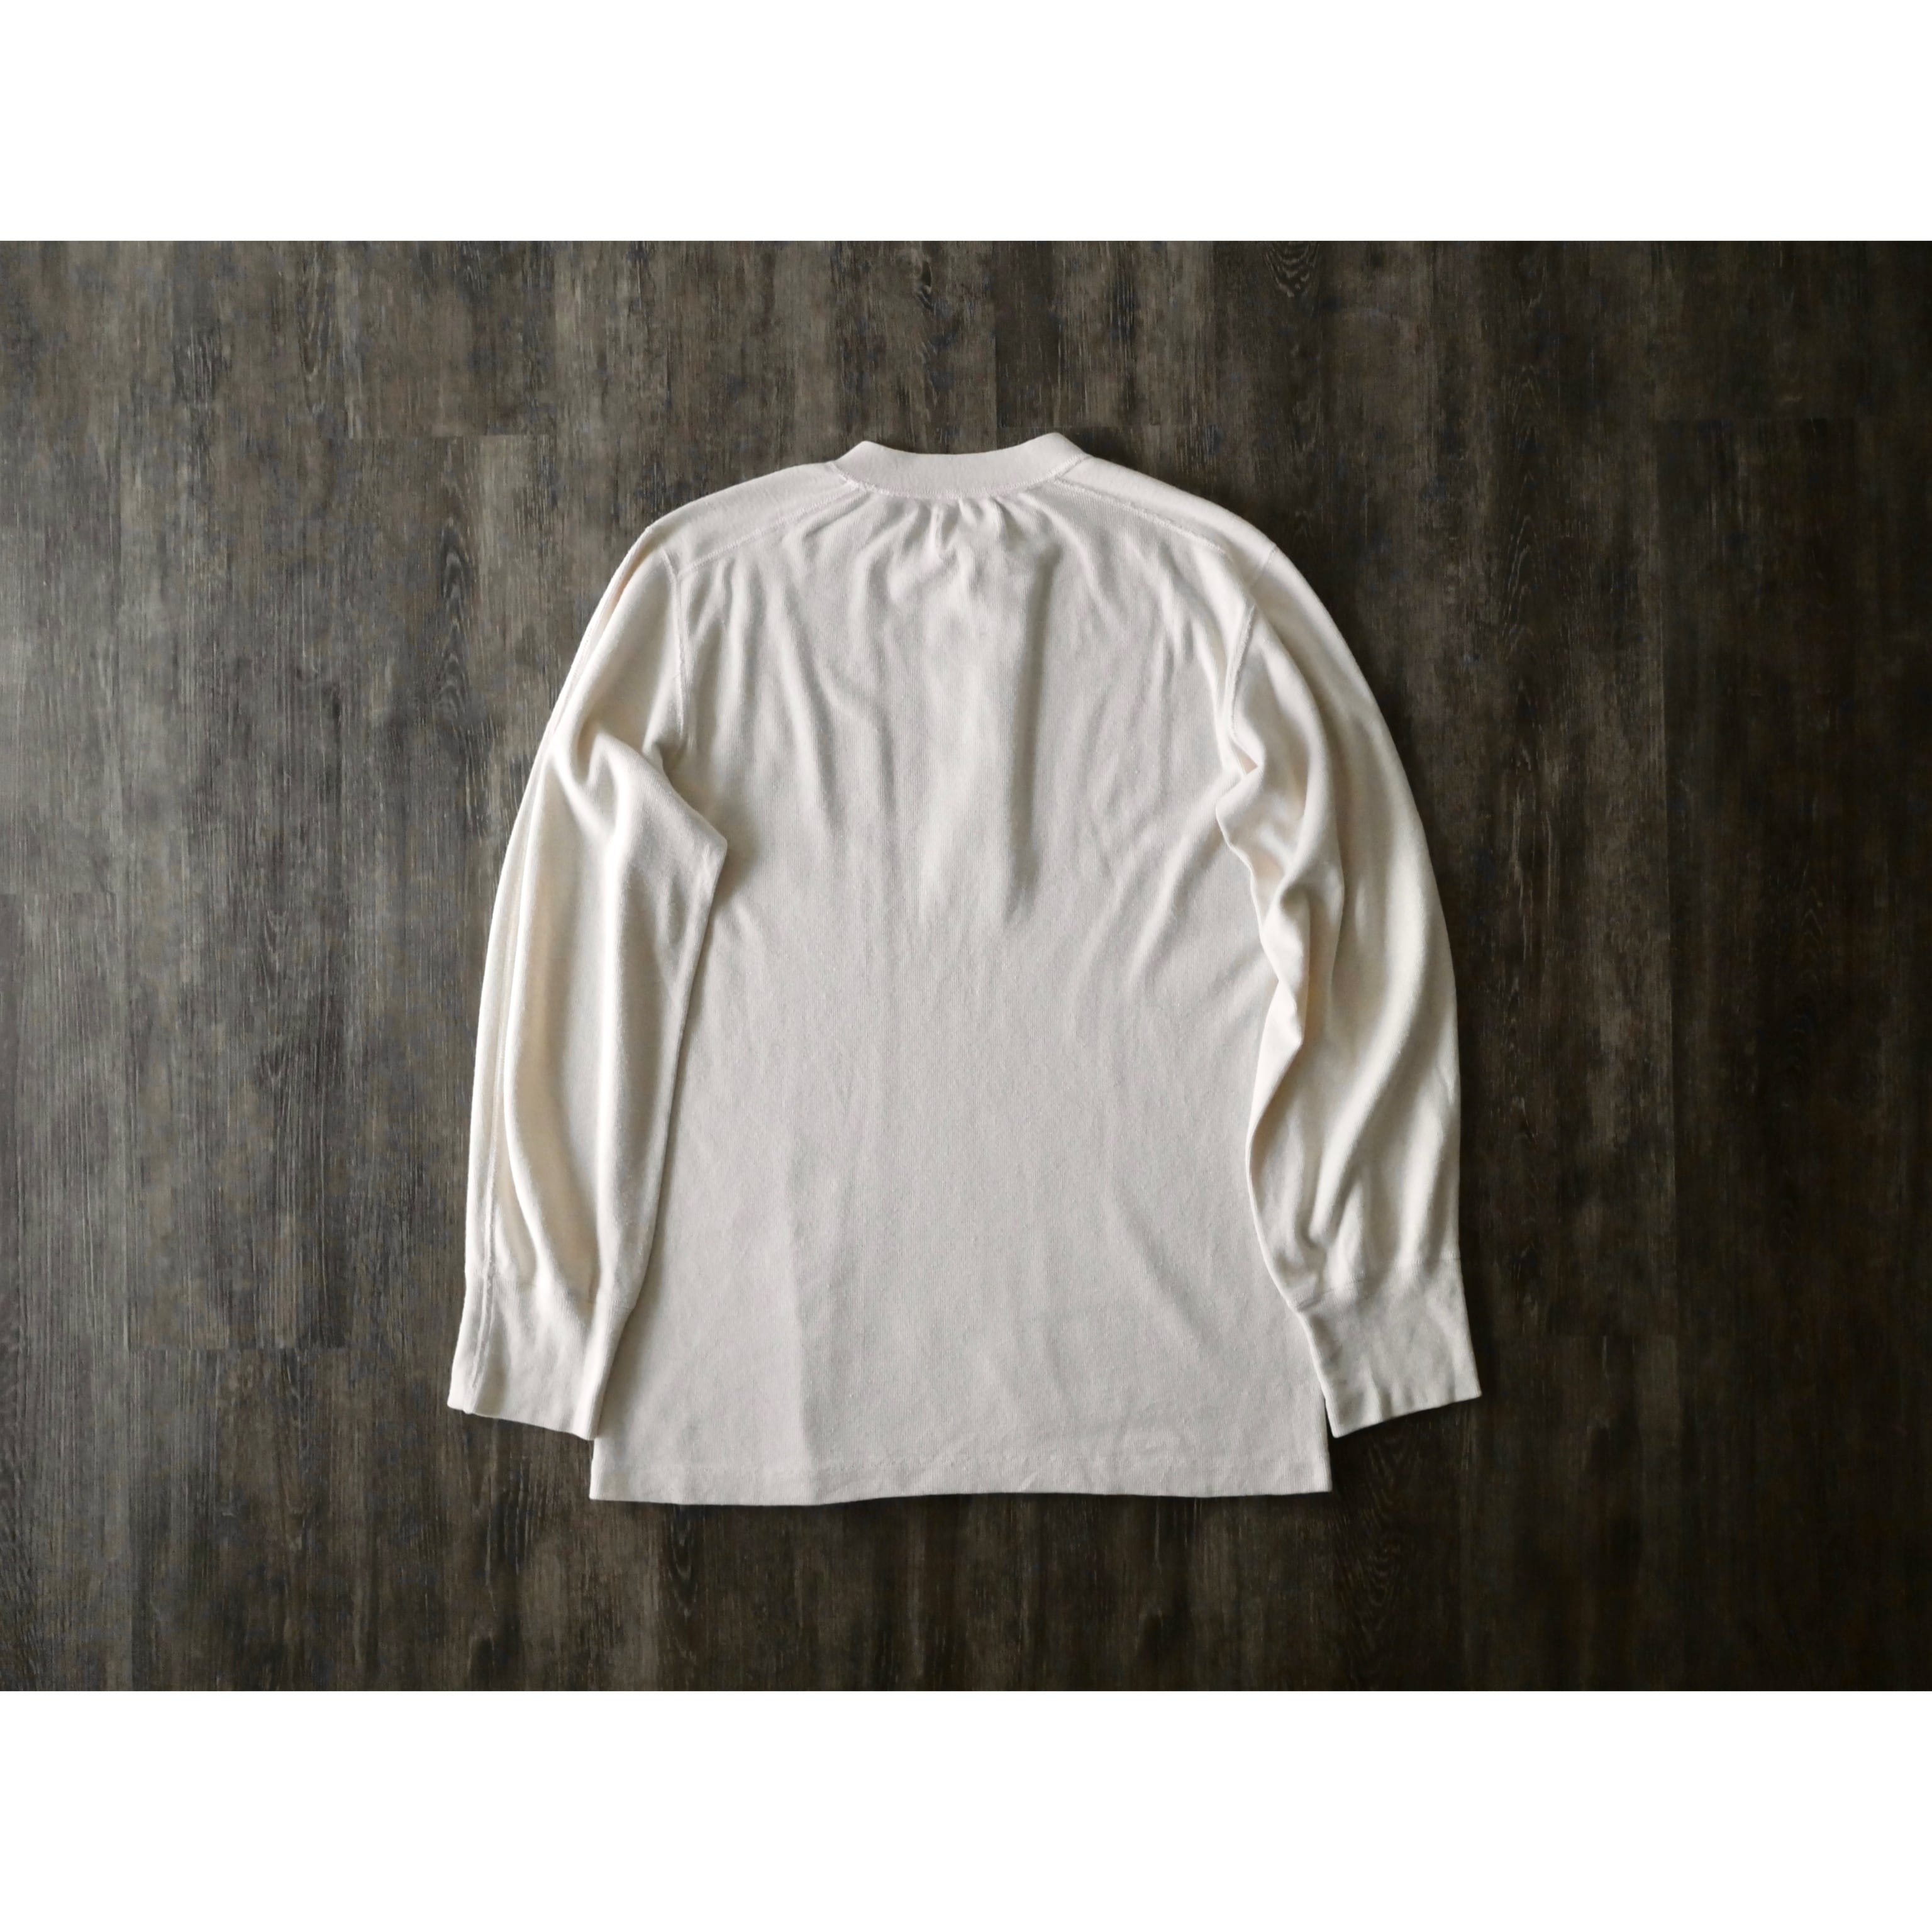 60s-70s usarmy vintage l/s undershirt winter lightweight “Henley